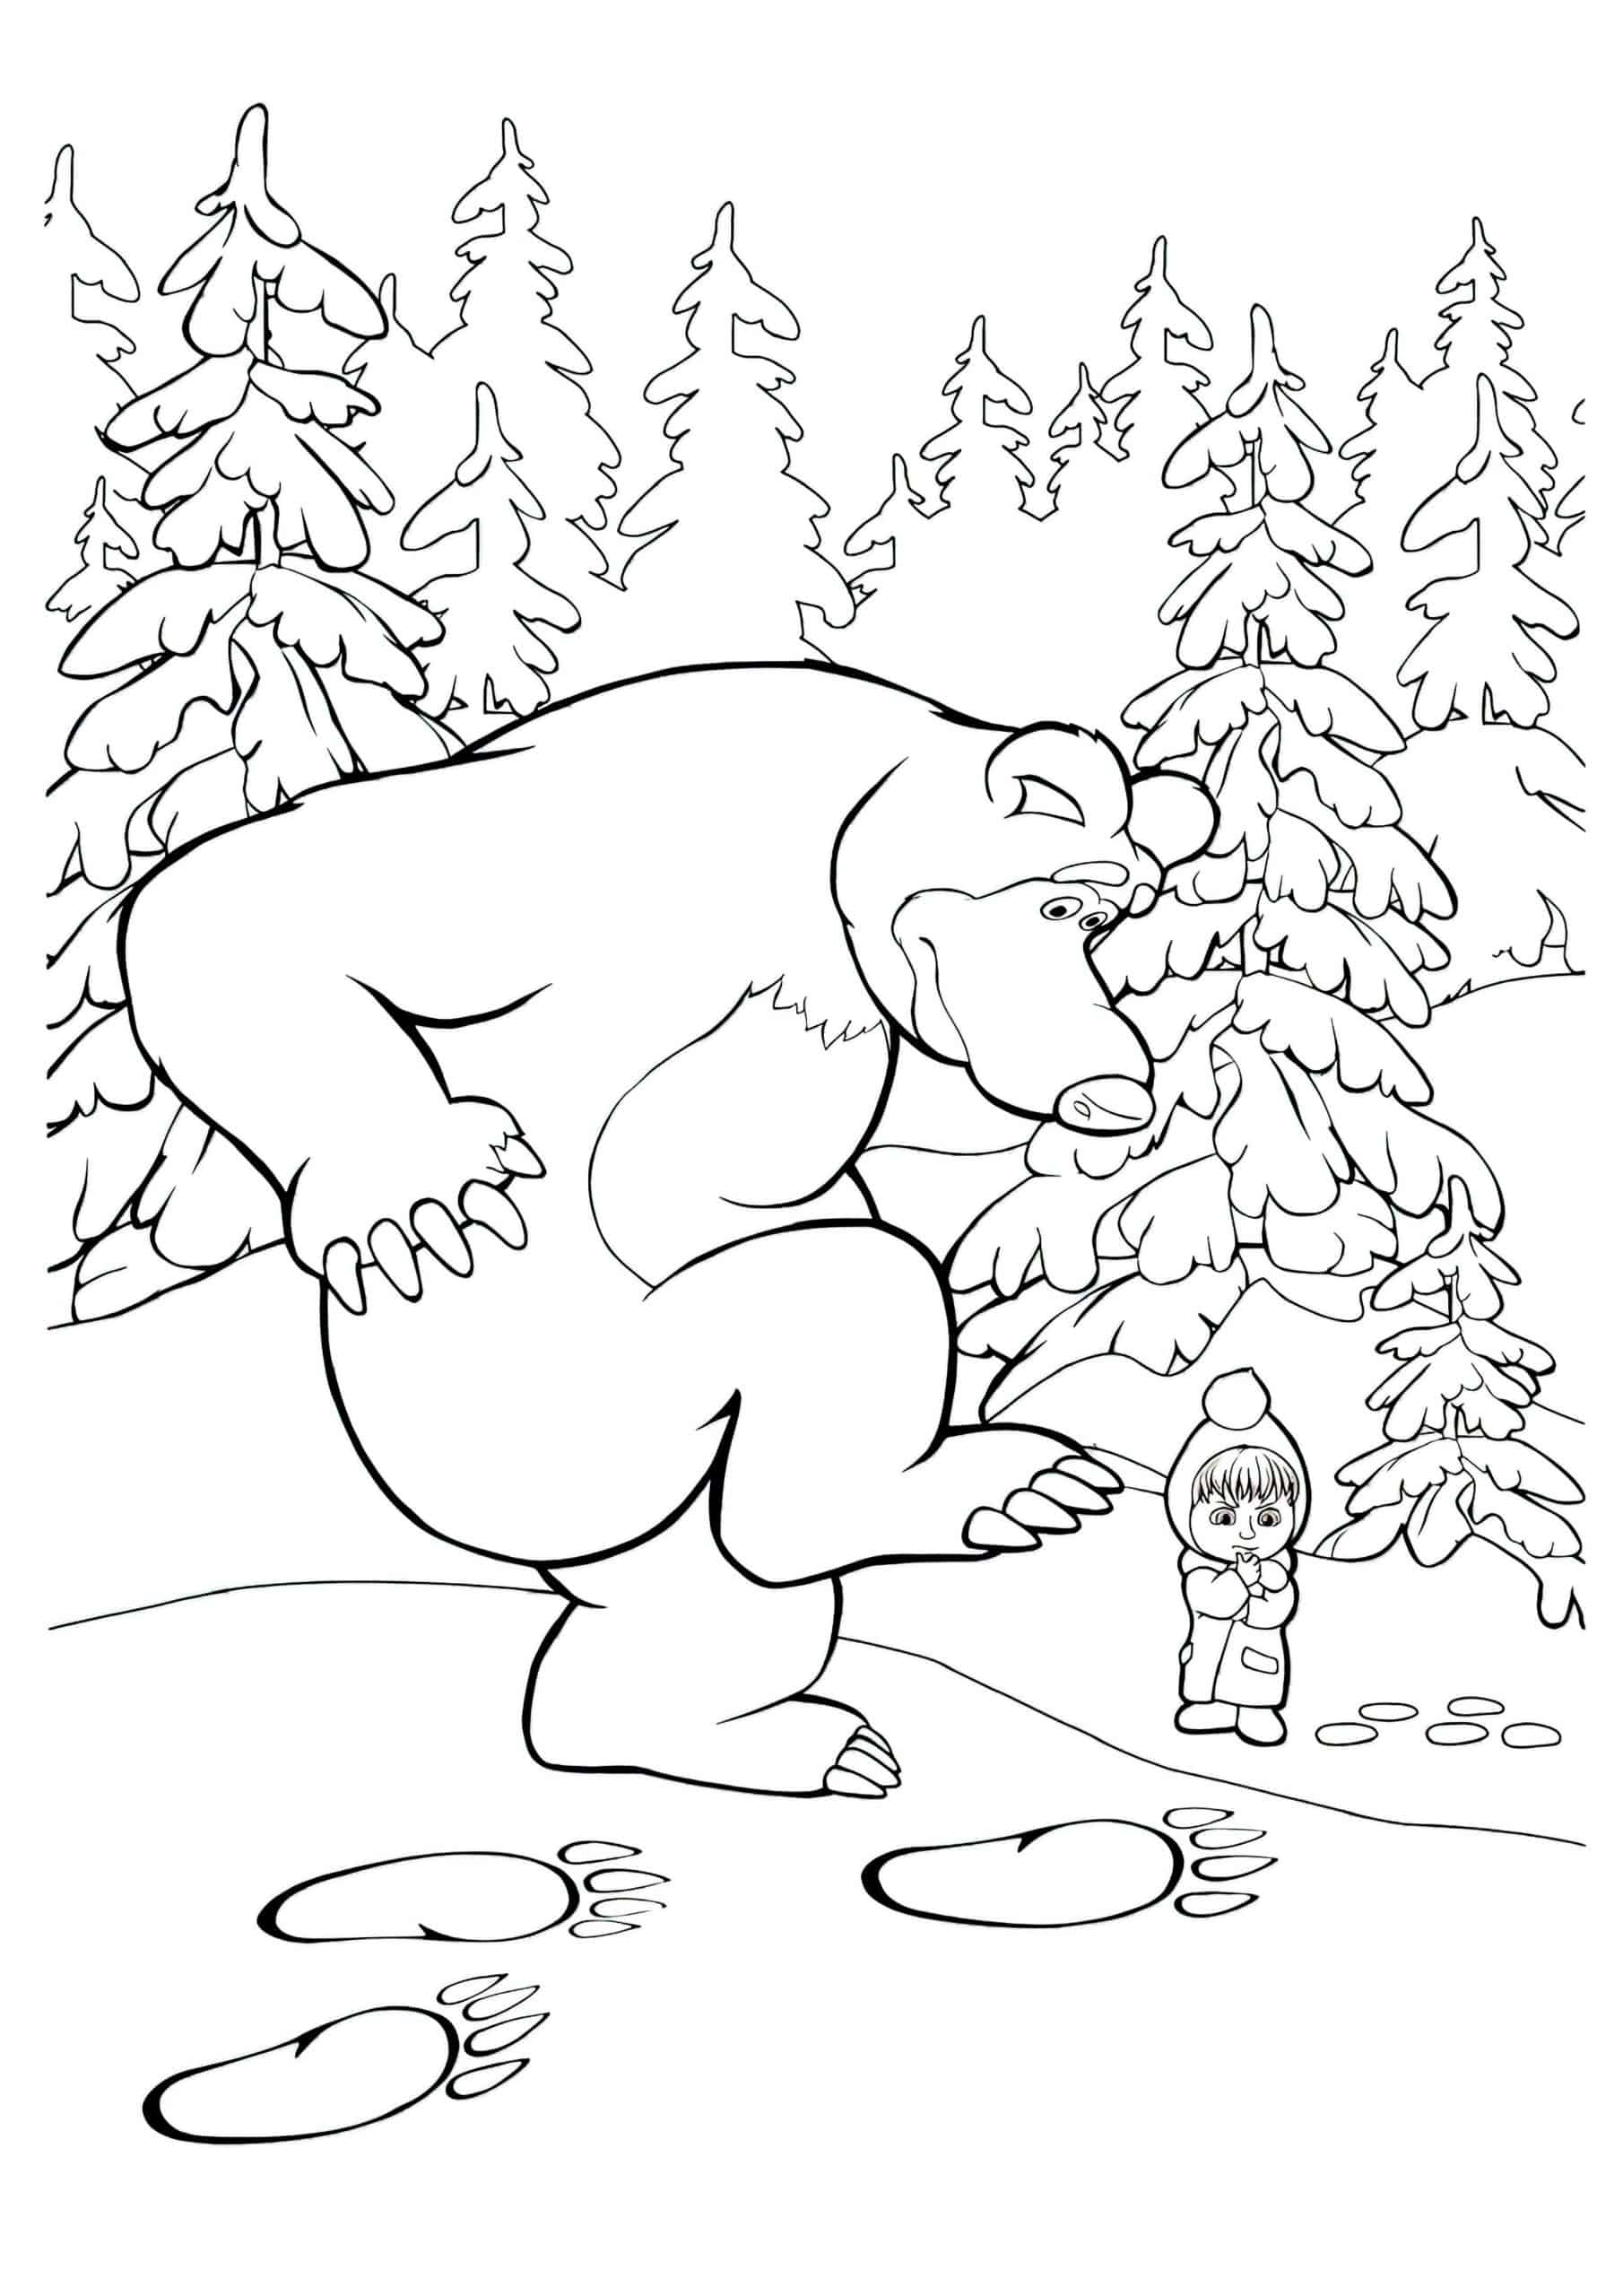 דף צביעה דוב משאיר סימנים בשלג